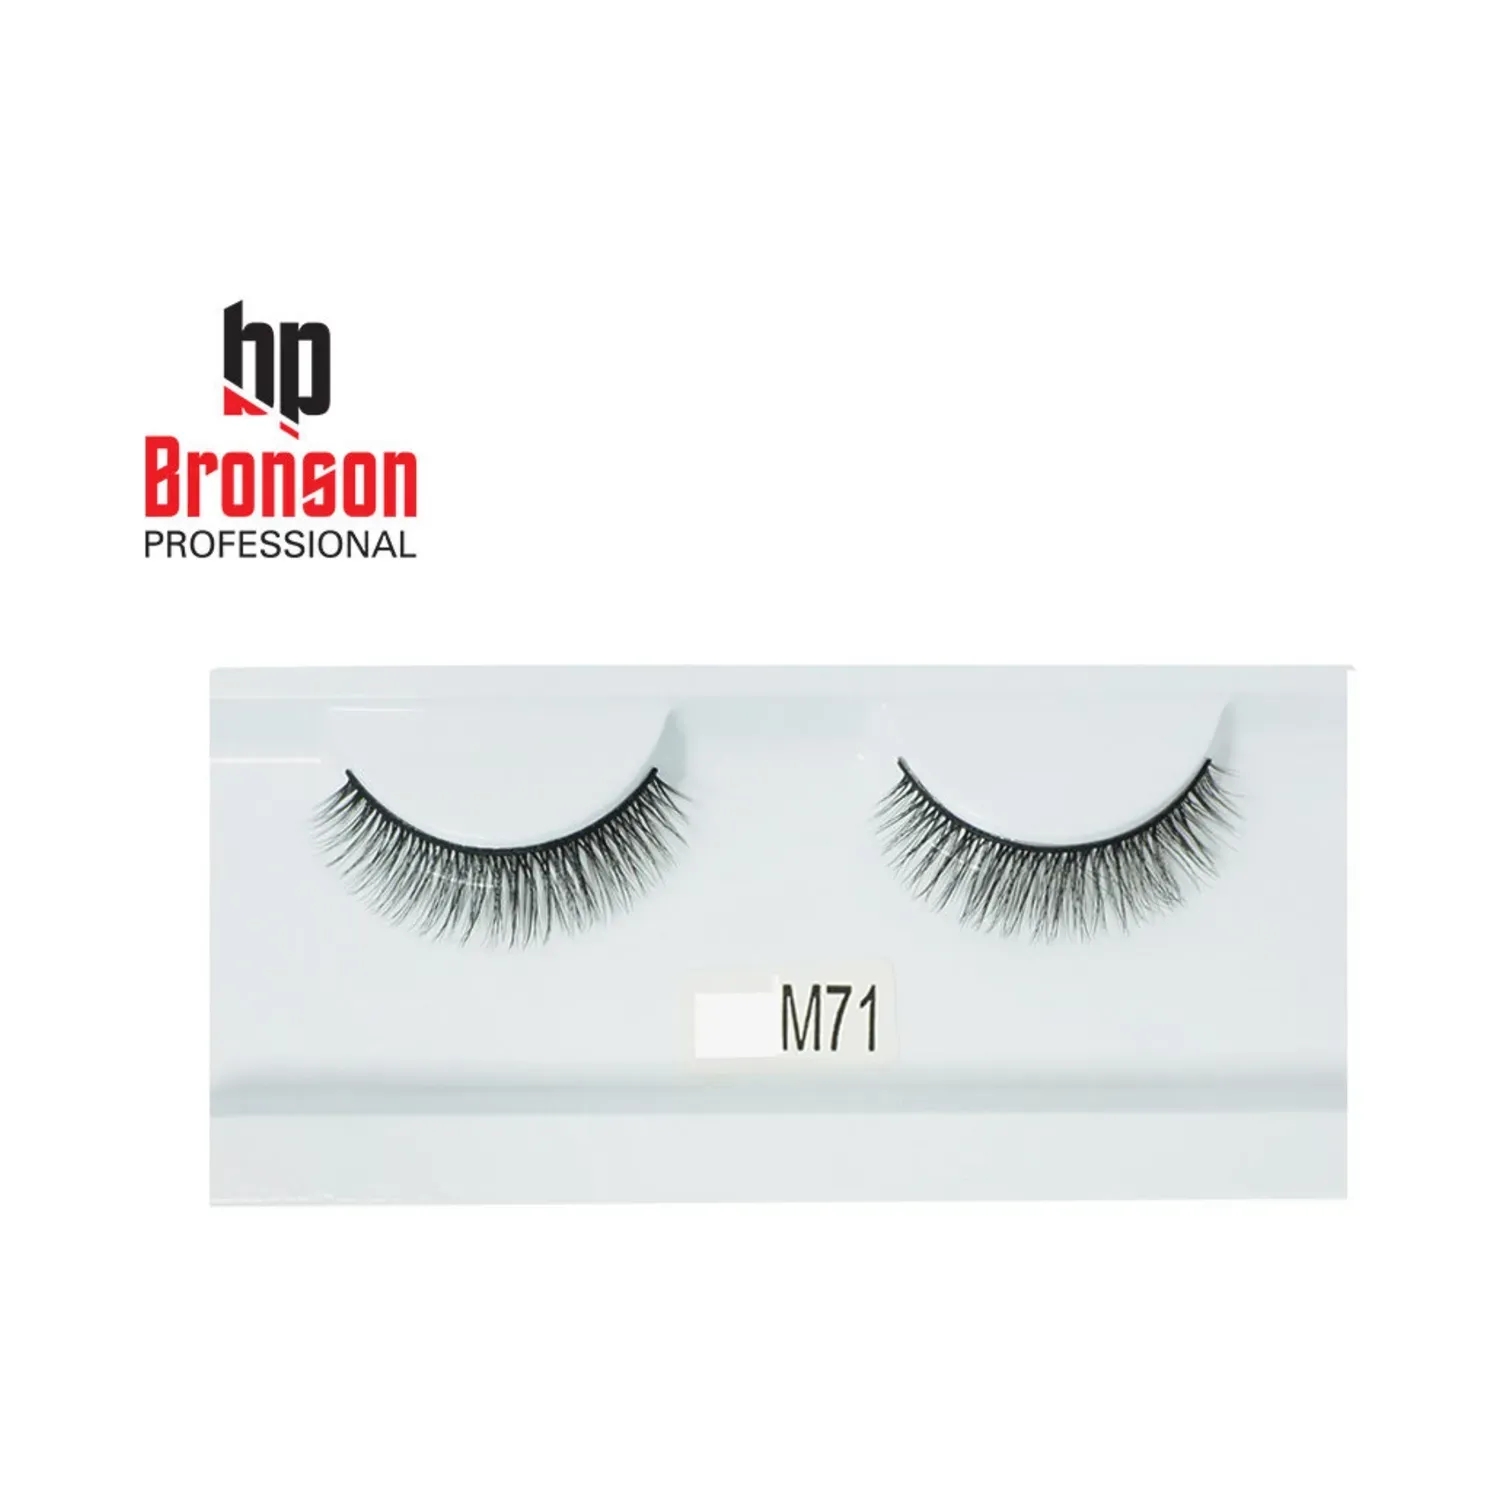 Bronson Professional | Bronson Professional 3D Eyelashes - M71 Black (1 Pair)